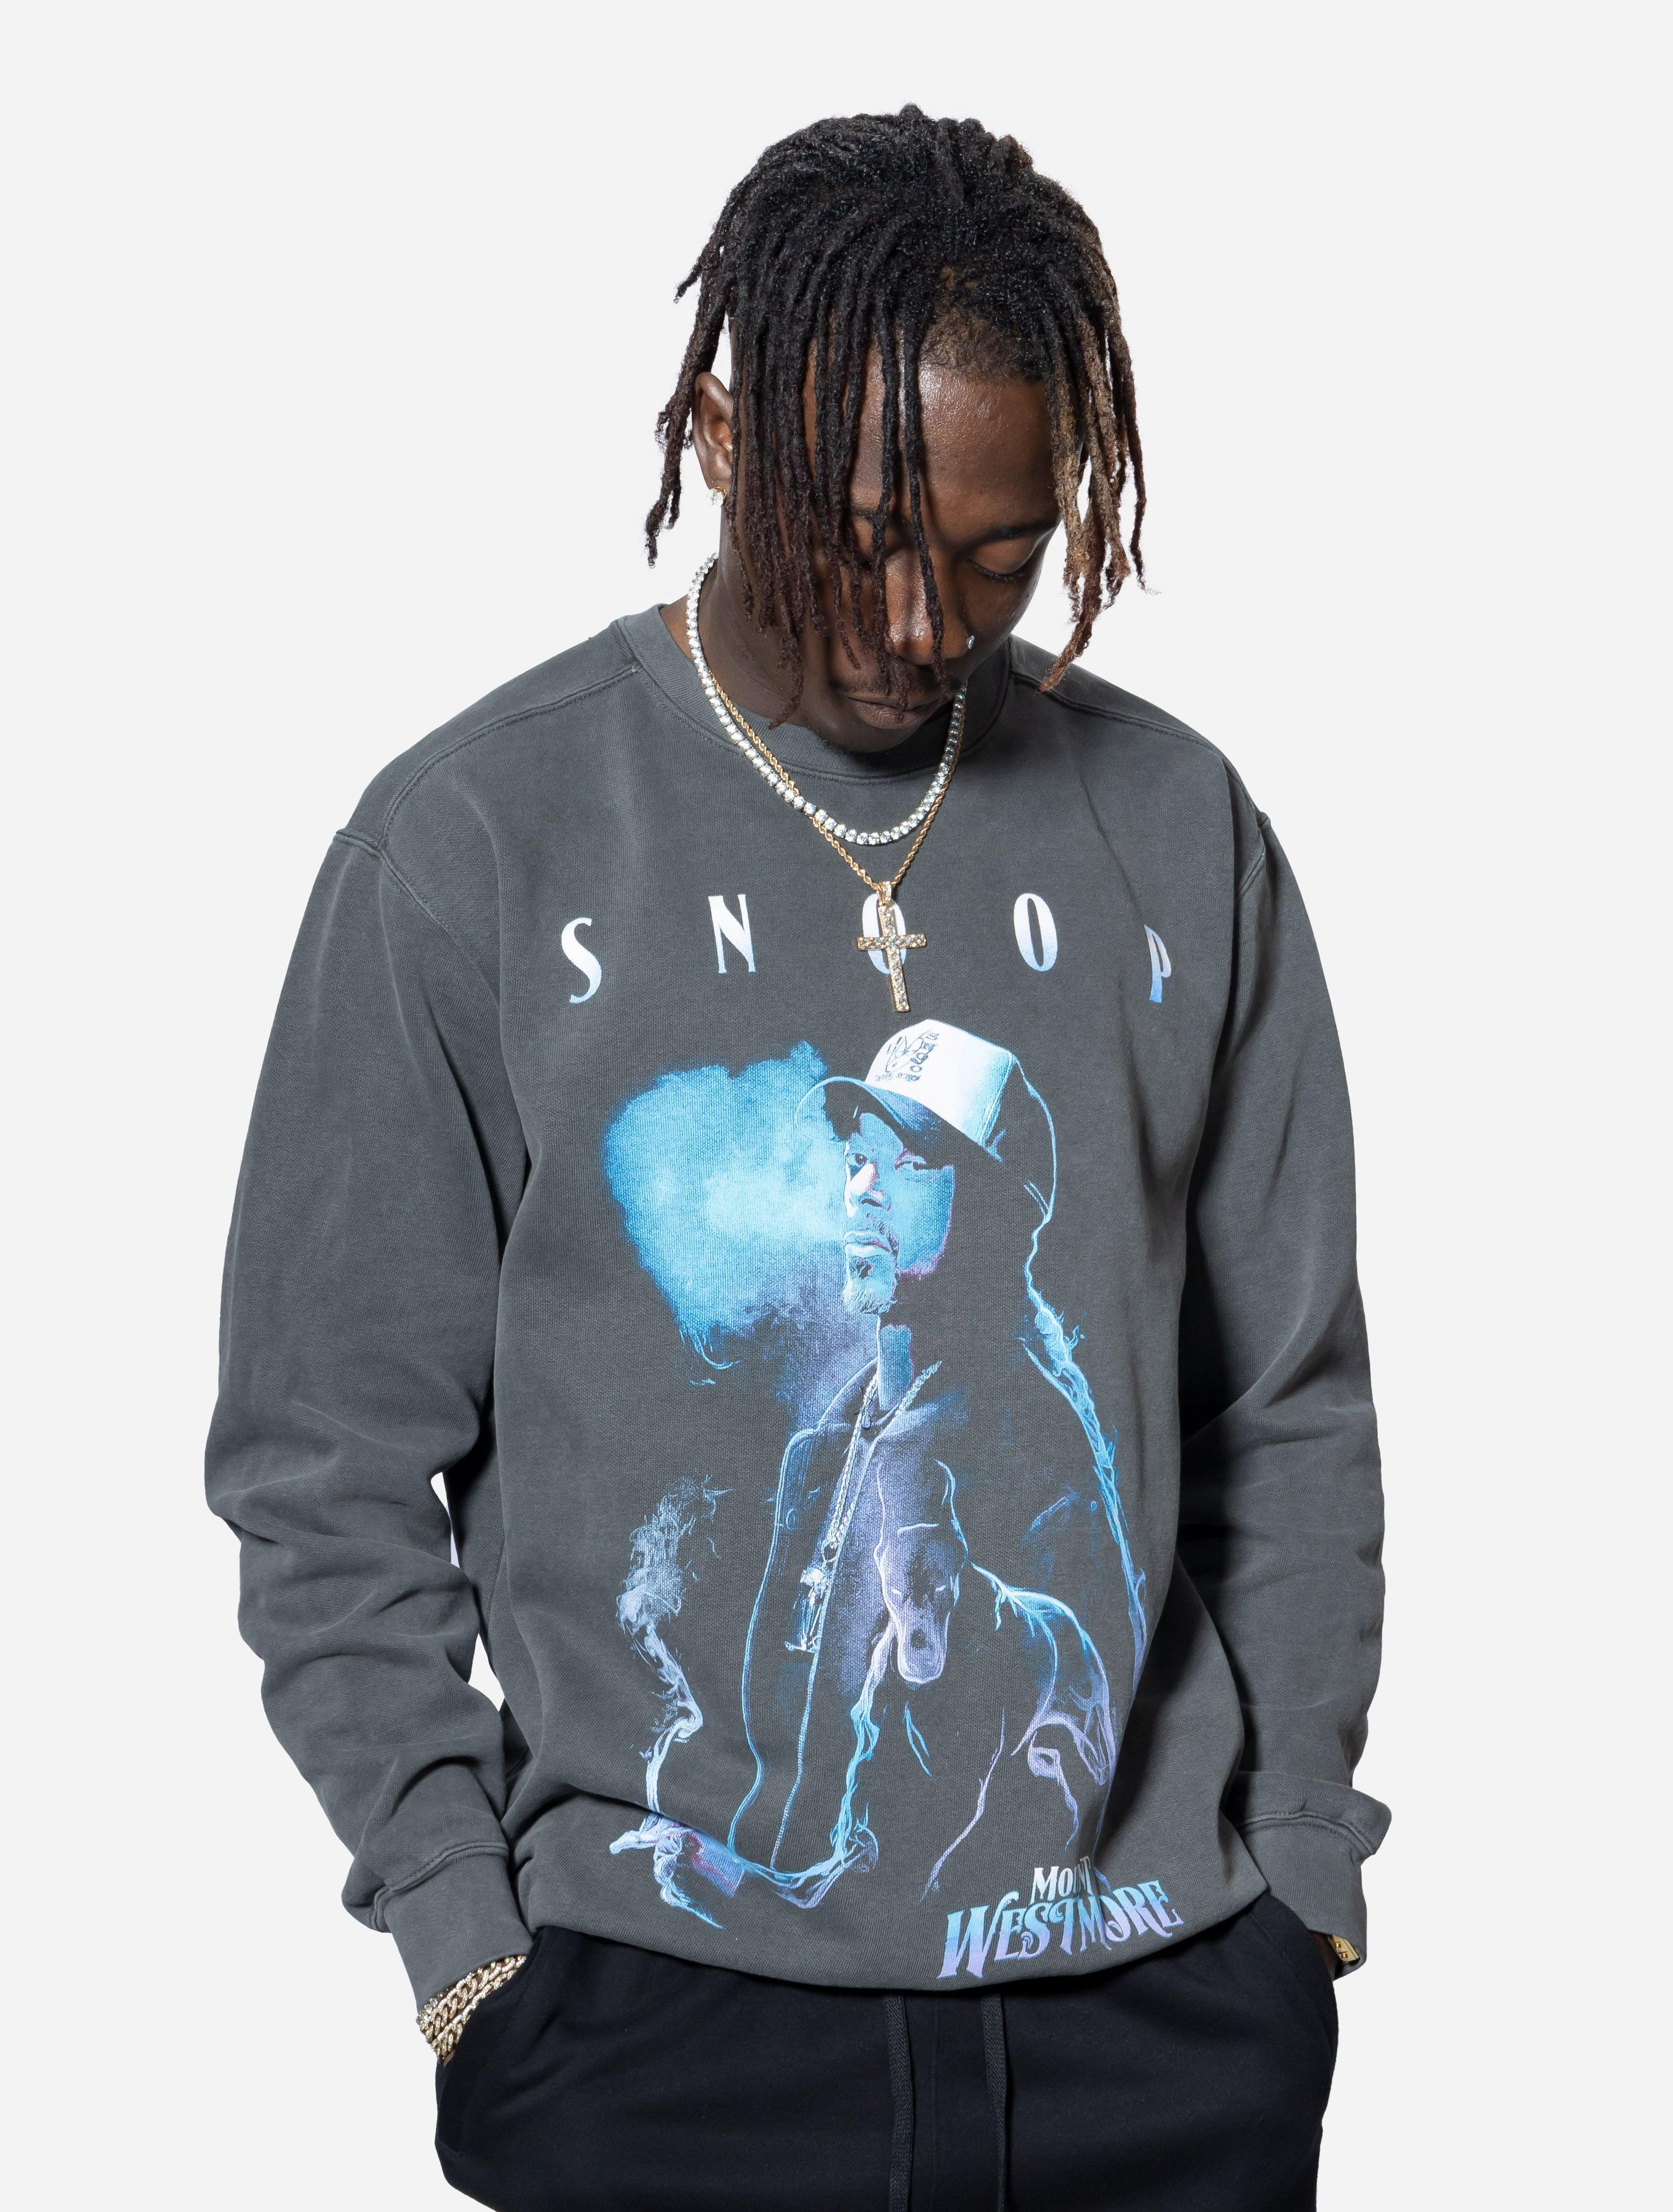 Omni Merch Mount Westmore Snoop Dogg Crew Sweatshirt - Challenger Streetwear